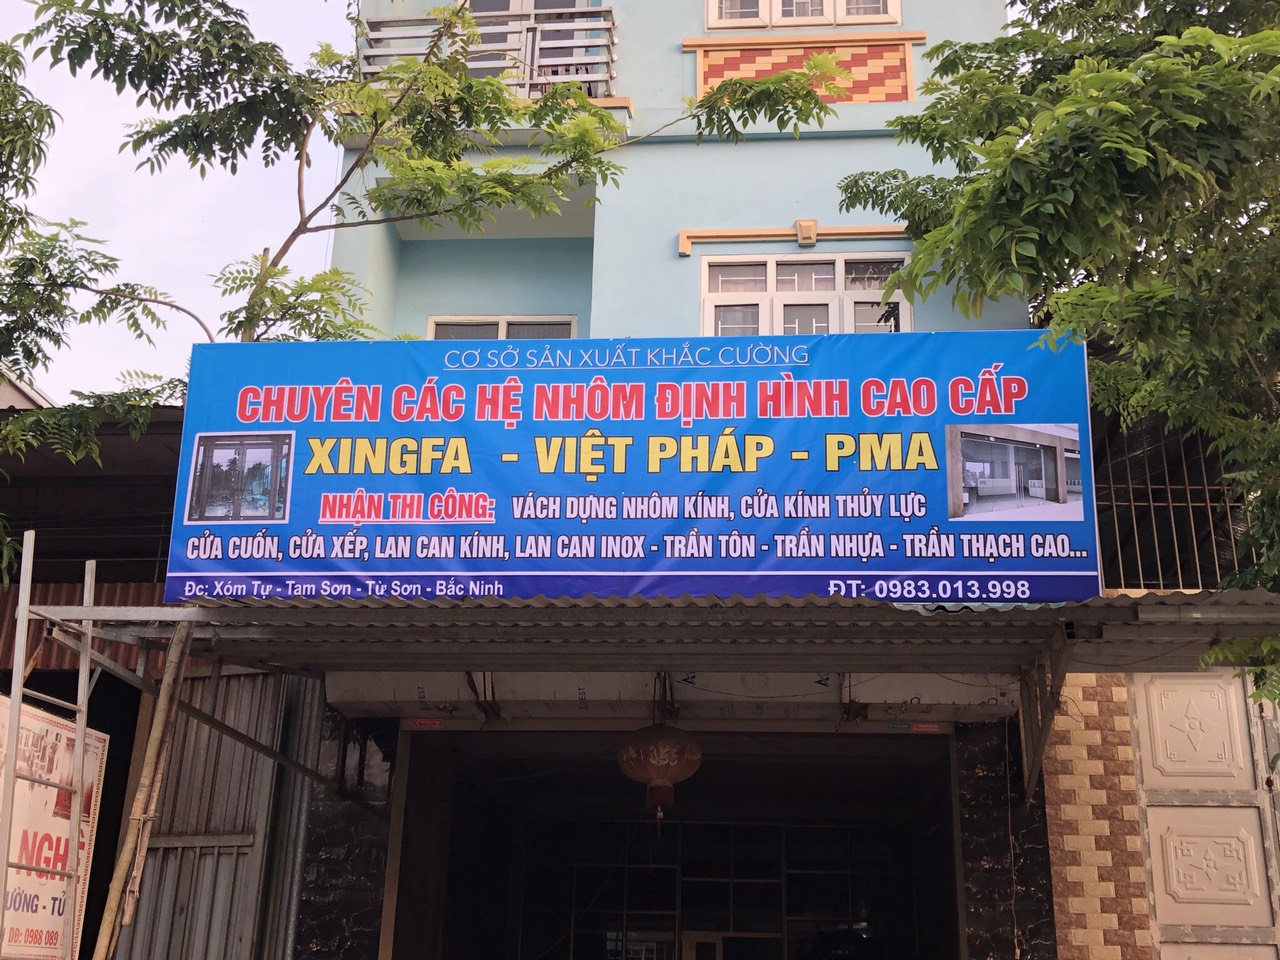 Xưởng cơ khi của Cường tại Tam Sơn, Từ Sơn, Bắc Ninh